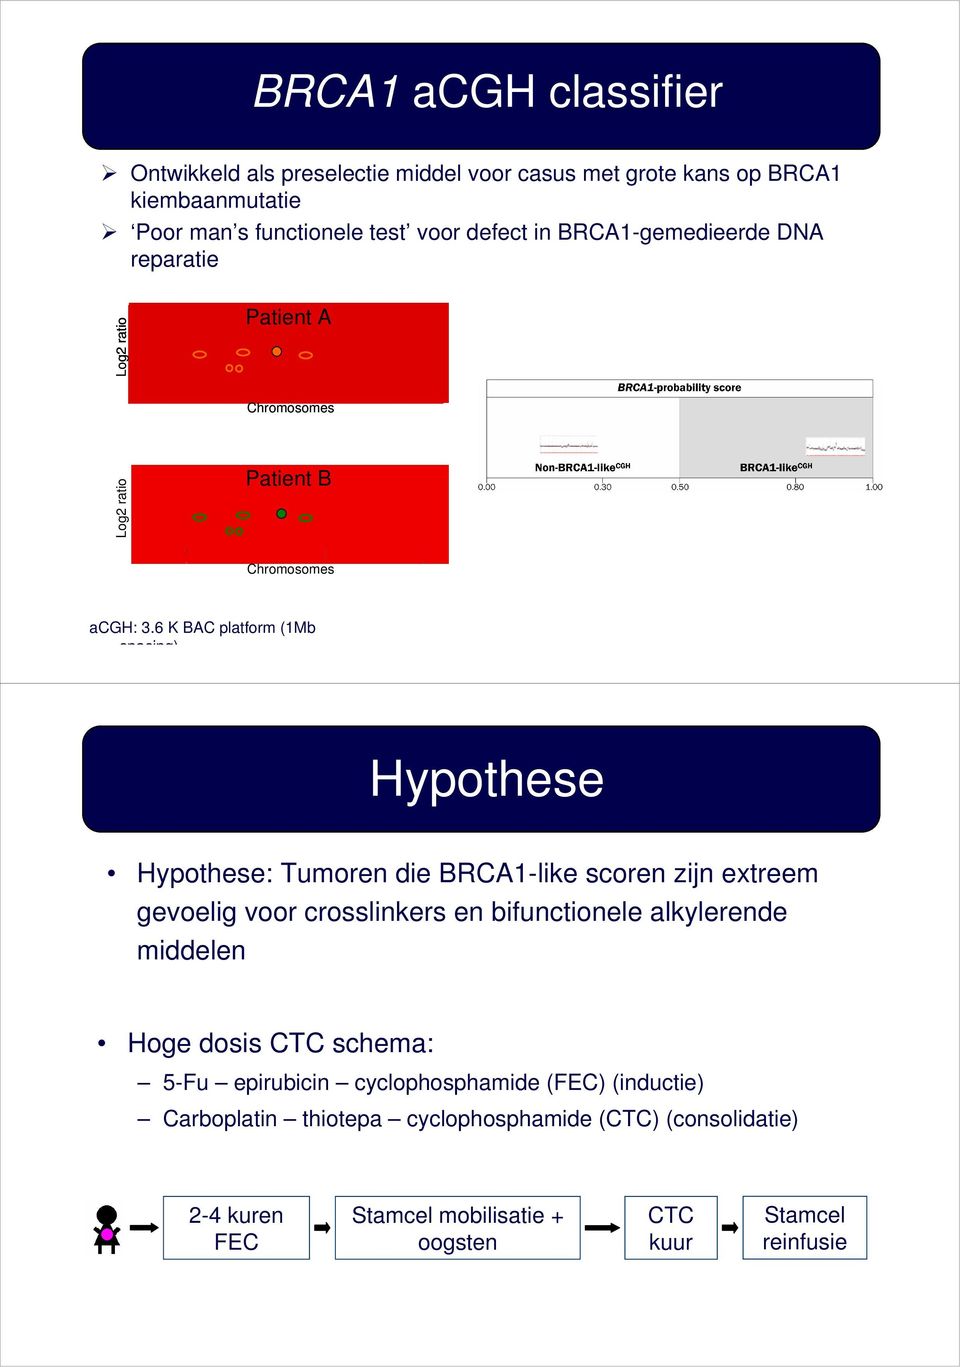 6 K BAC platform (1Mb spacing) Hypothese Hypothese: Tumoren die BRCA1-like scoren zijn extreem gevoelig voor crosslinkers en bifunctionele alkylerende